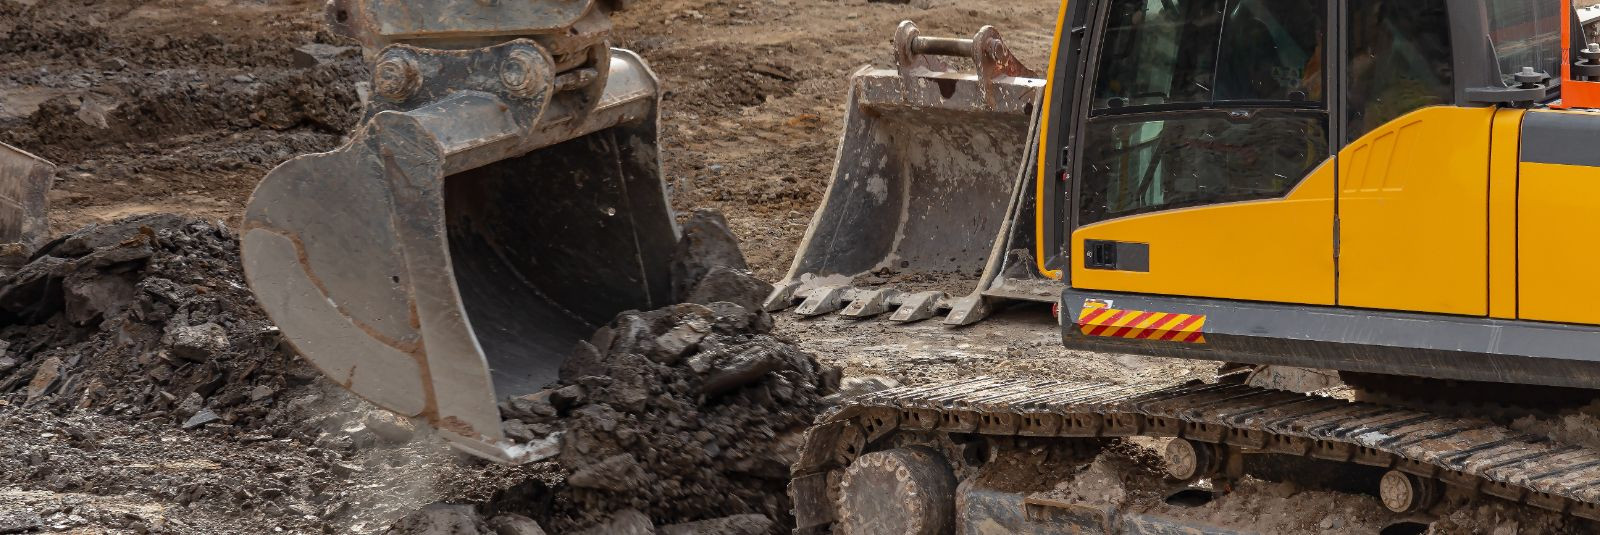 Ehitus- ja mullatööd on sageli keerulised ja aeganõudvad protsessid, eriti kui tuleb tegeleda suurte maa-alade kaevamise või materjalide liigutamisega. Selles a